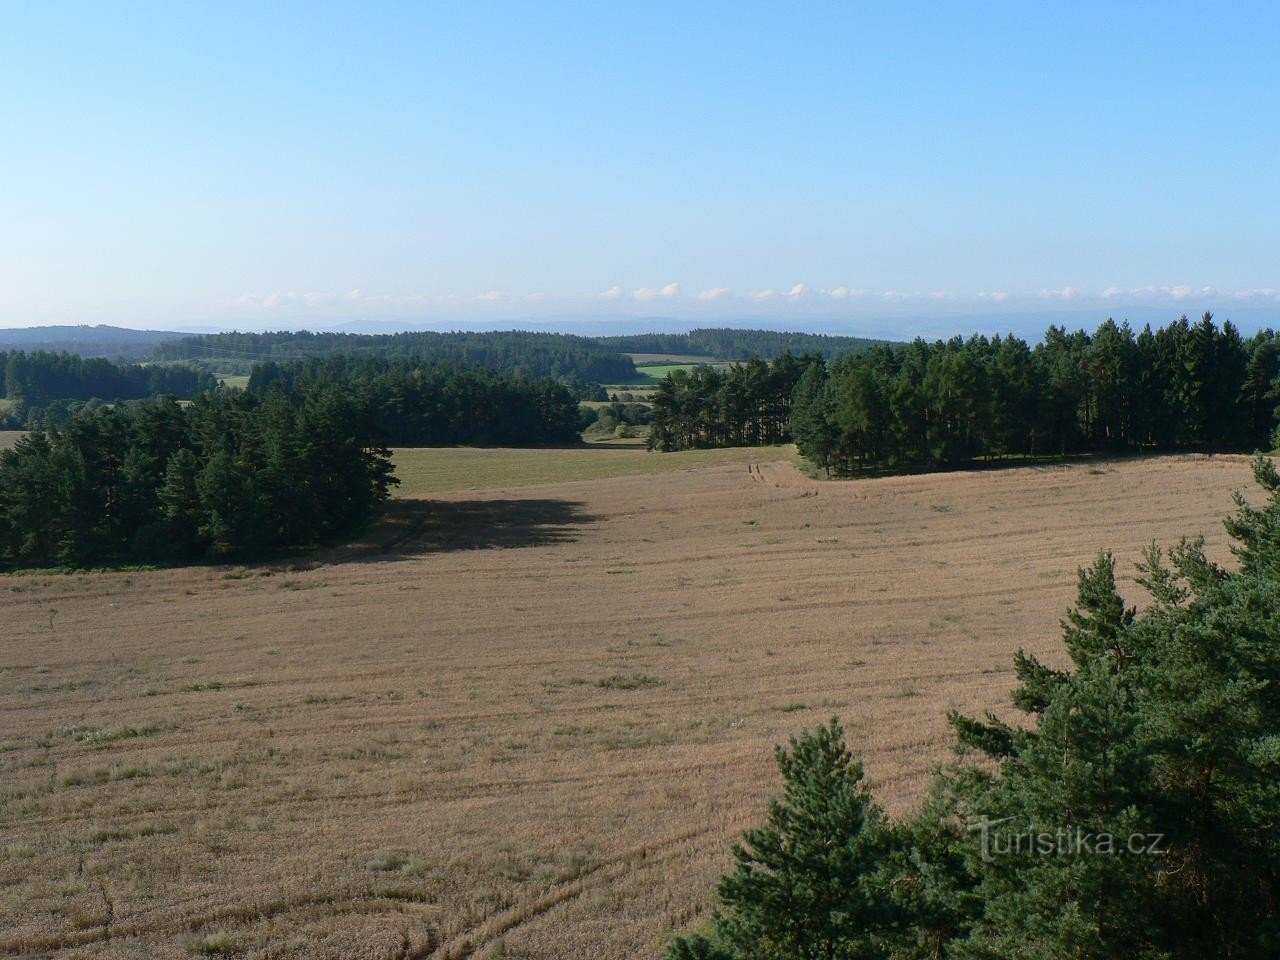 Pětnice, view of Šumava